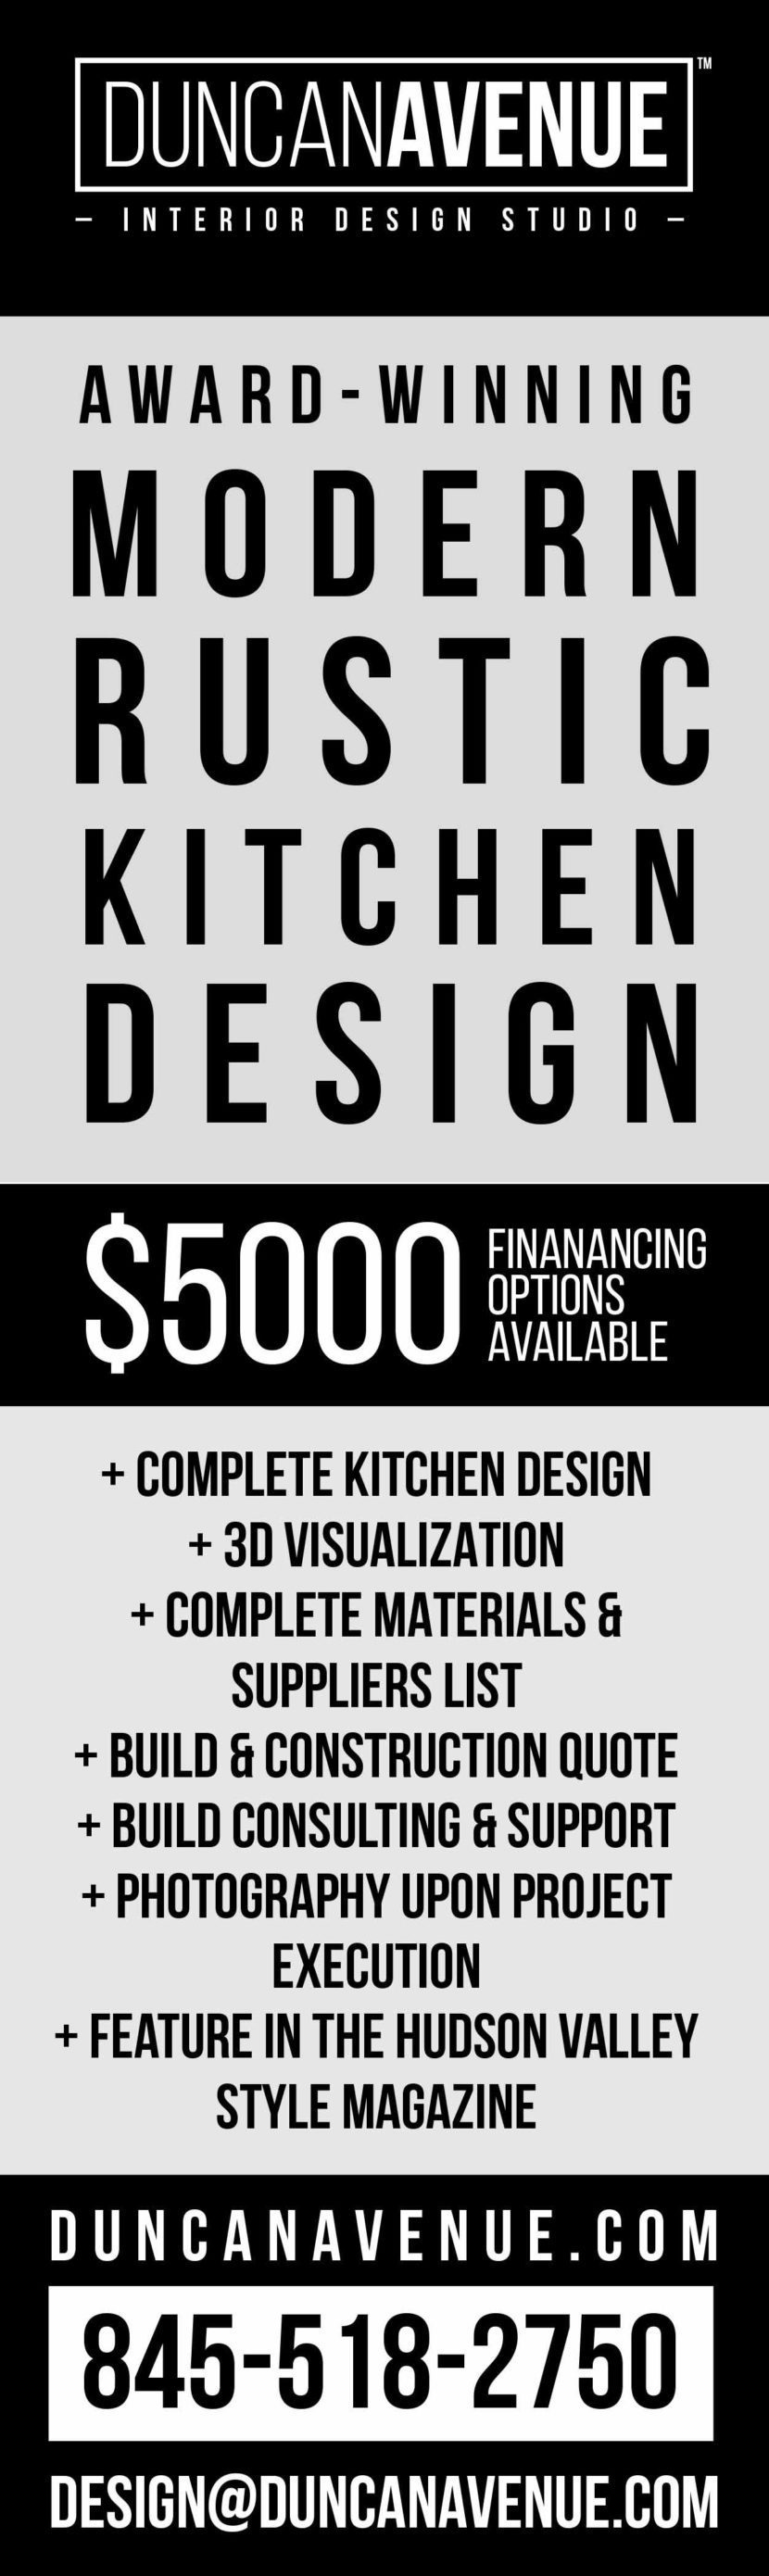 Modern Rustic Kitchen Design by Duncan Avenue Interior Design Studio - Hudson Valley